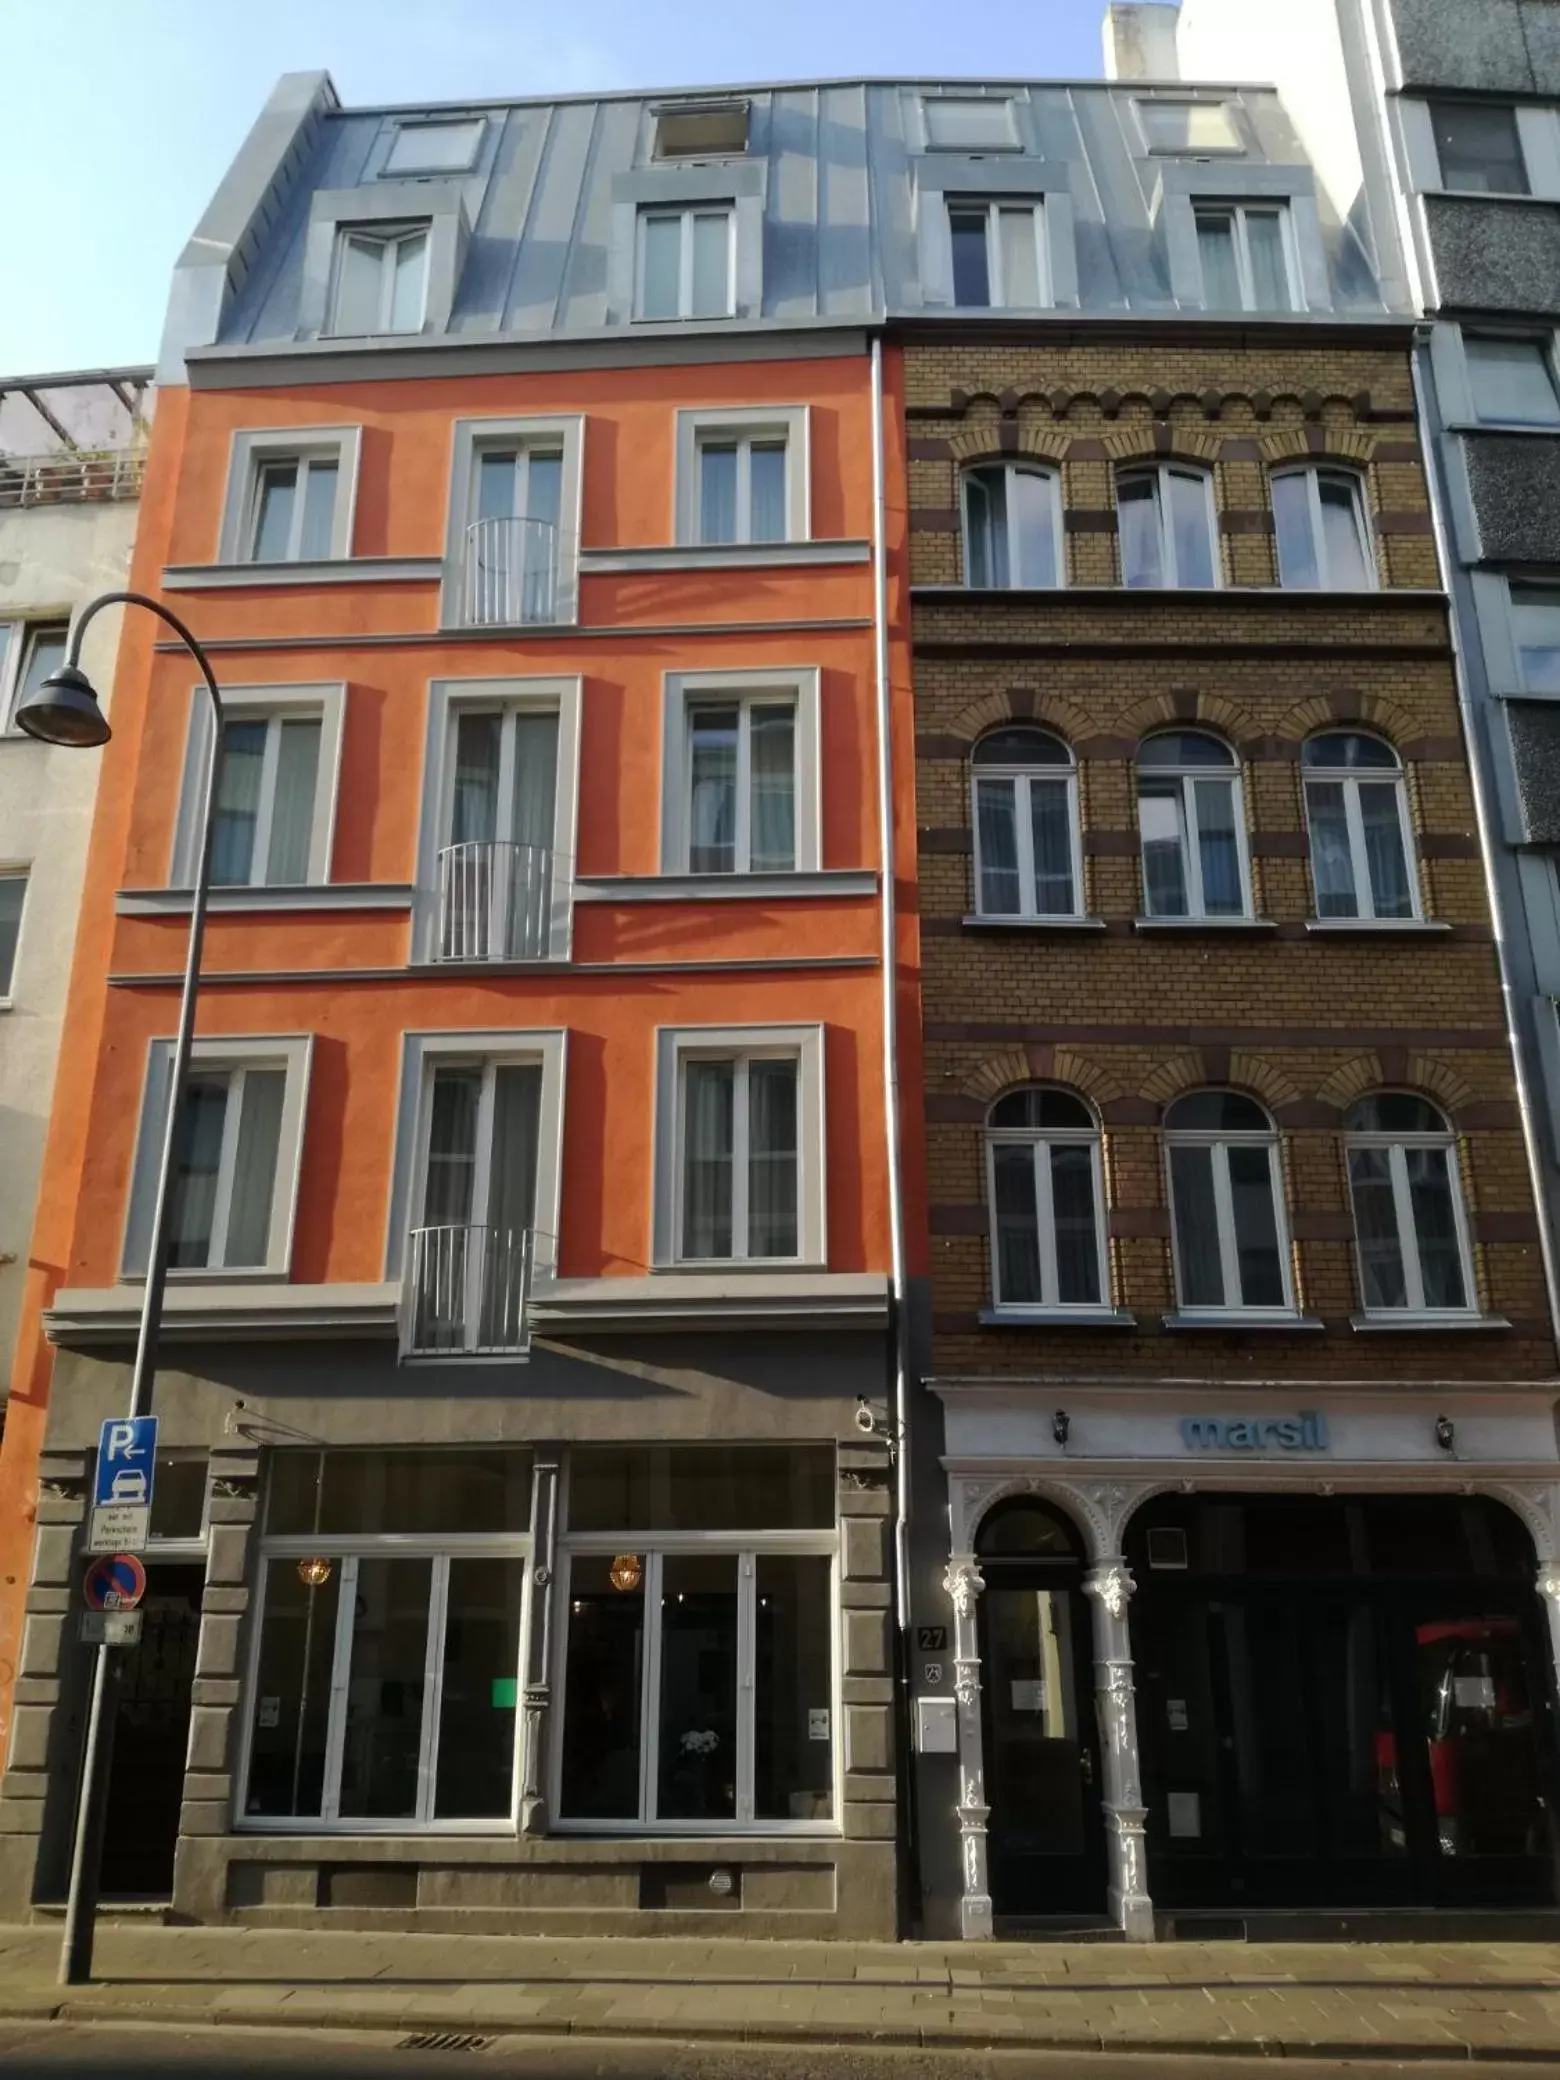 Facade/entrance, Property Building in MAISON MARSIL - Boutique Hotel Köln